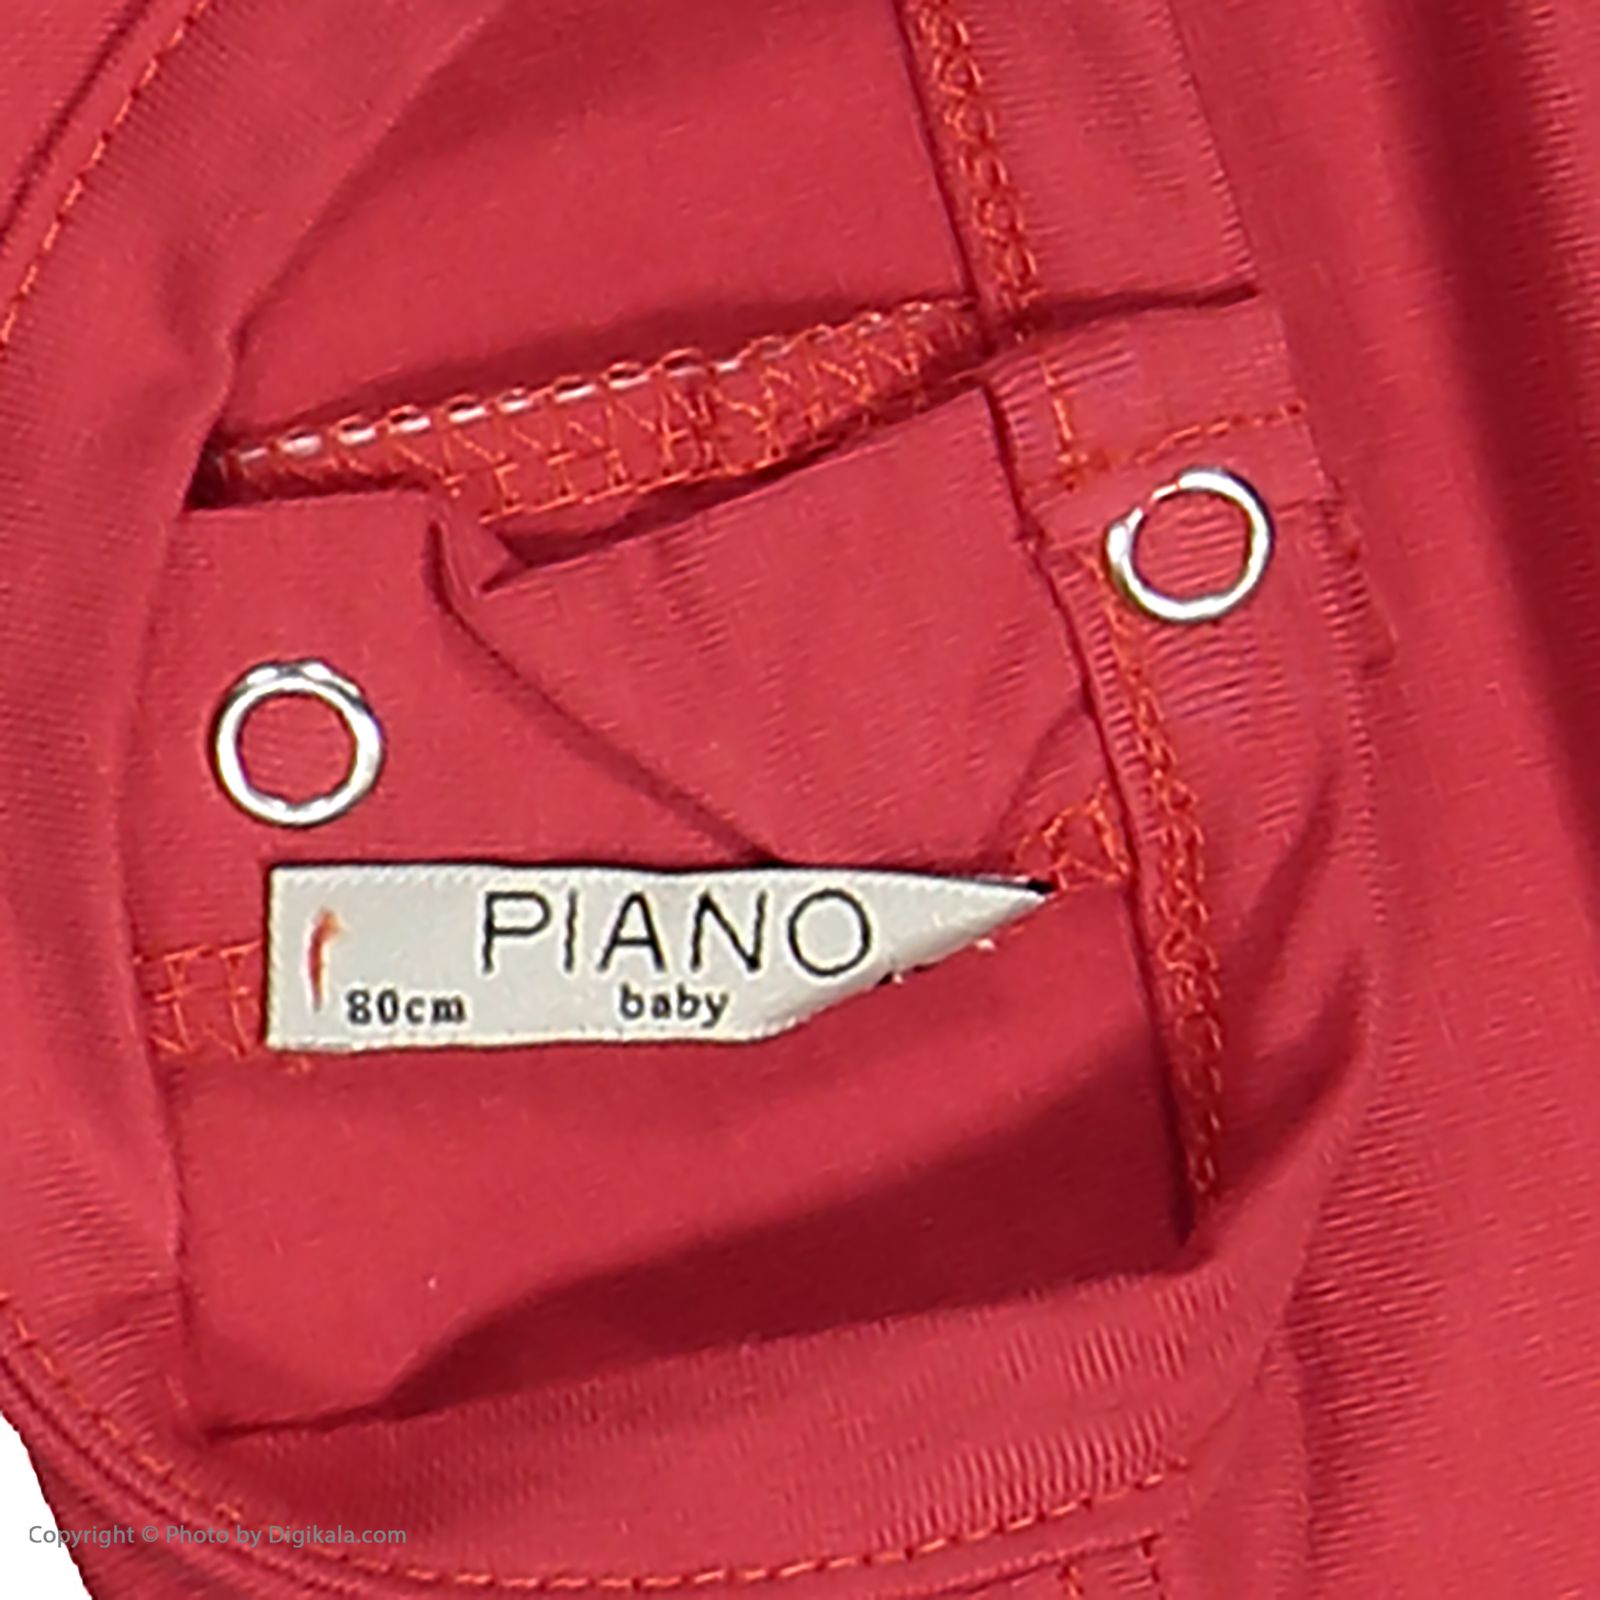 تی شرت نوزادی دخترانه پیانو مدل 1009009801045-72 -  - 5